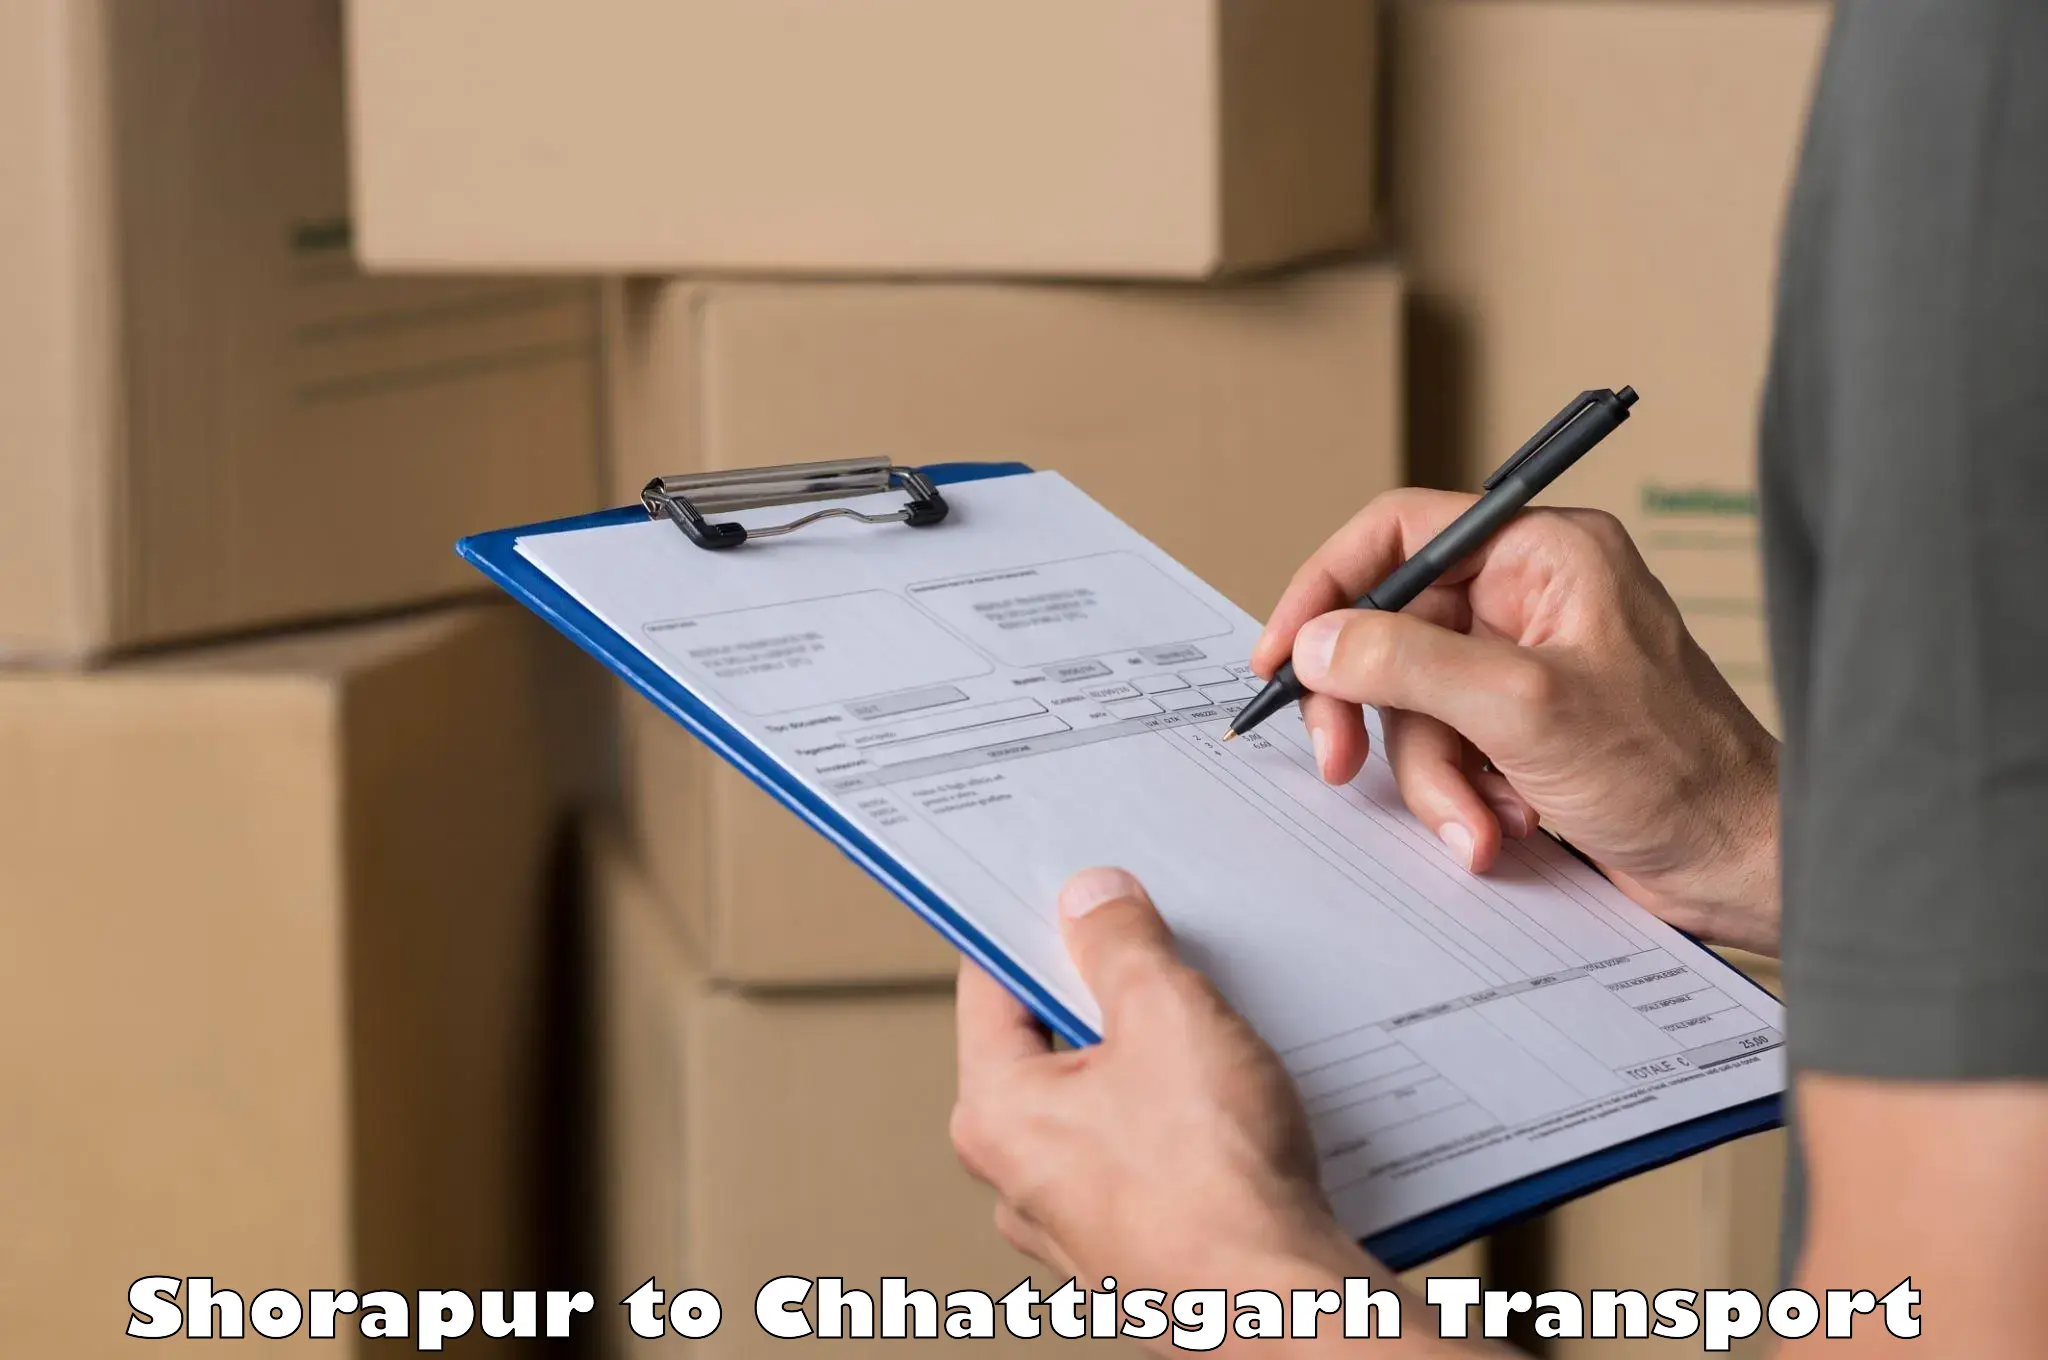 Online transport booking Shorapur to Bijapur Chhattisgarh